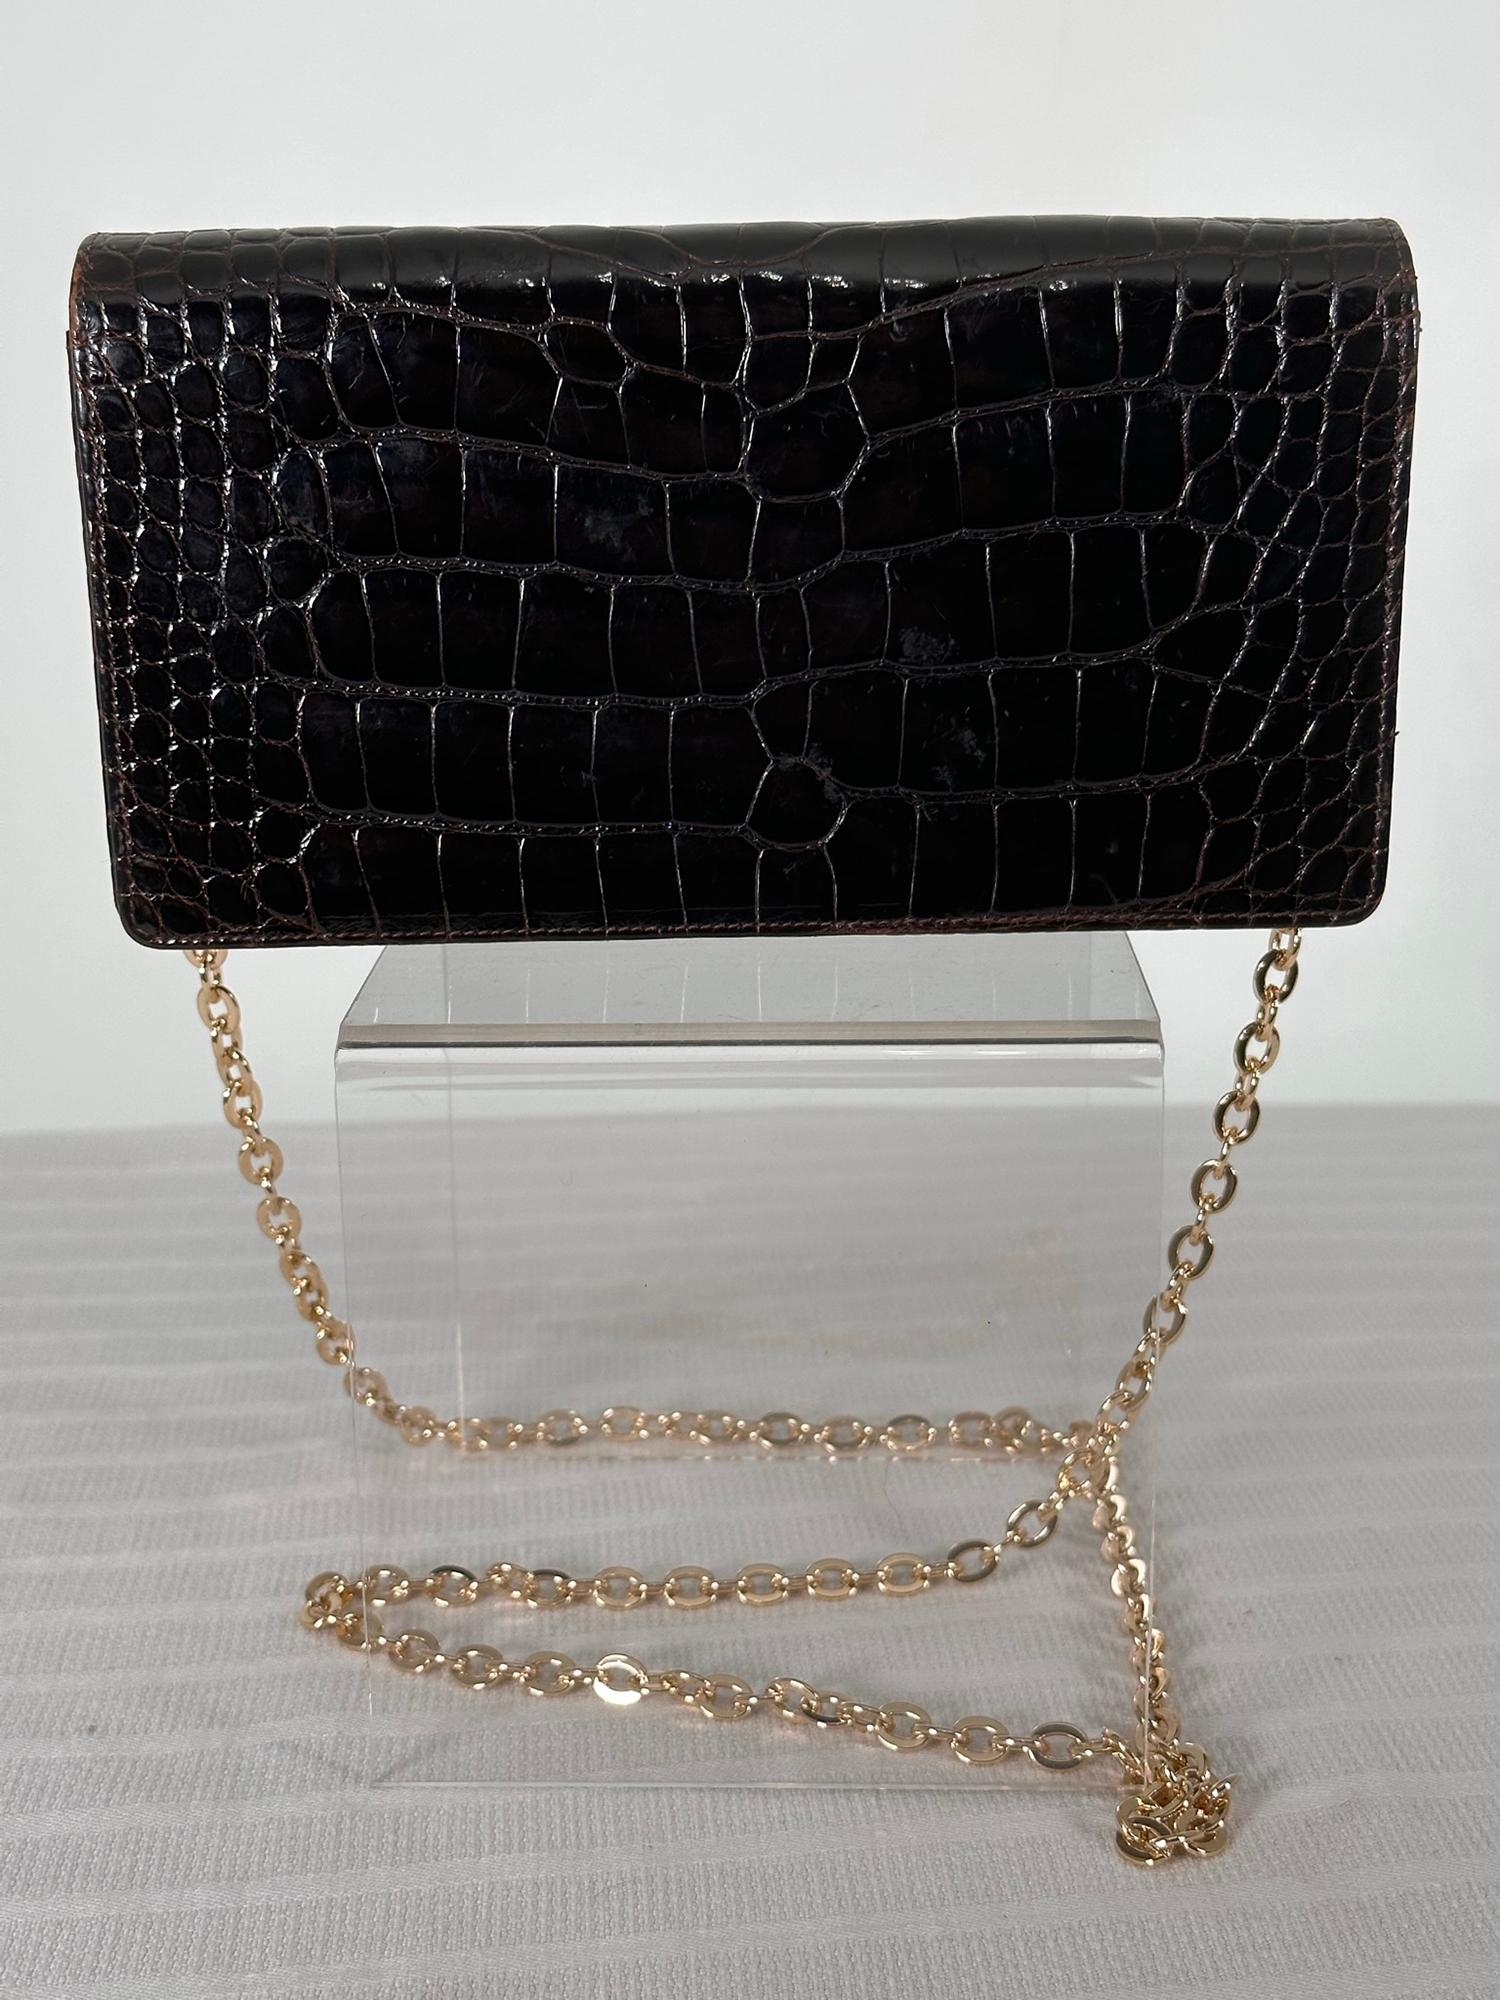 Black Lana of London Dark Chocolate Brown Alligator Clutch  Shoulder Bag  For Sale